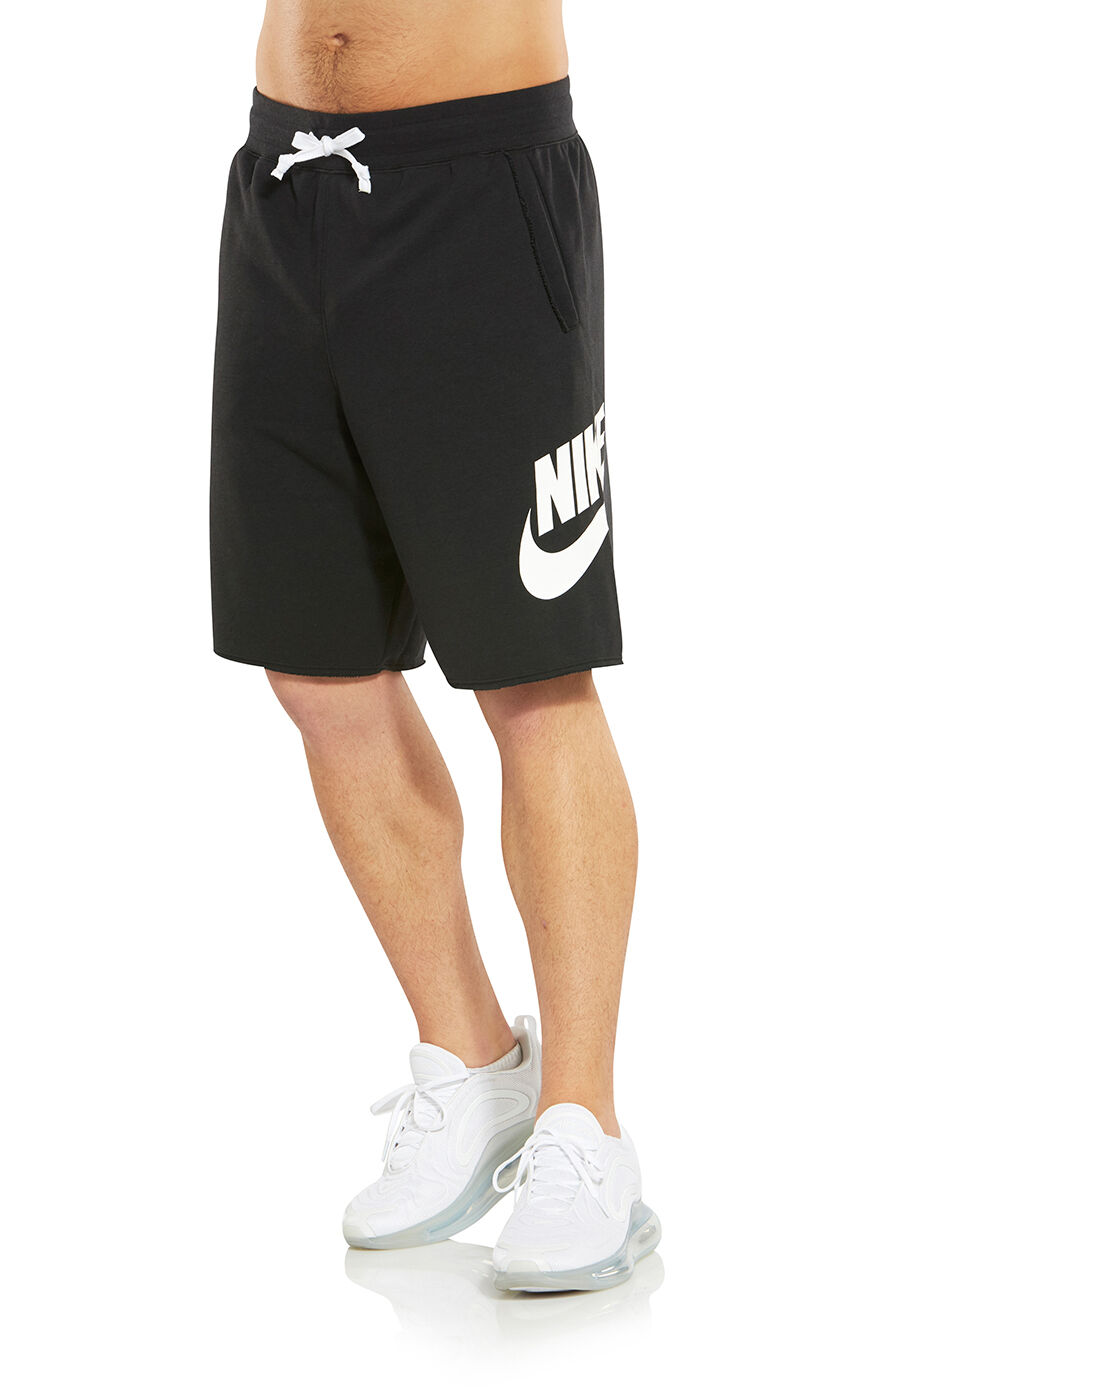 Men's Black Nike Alumni Shorts | Life 